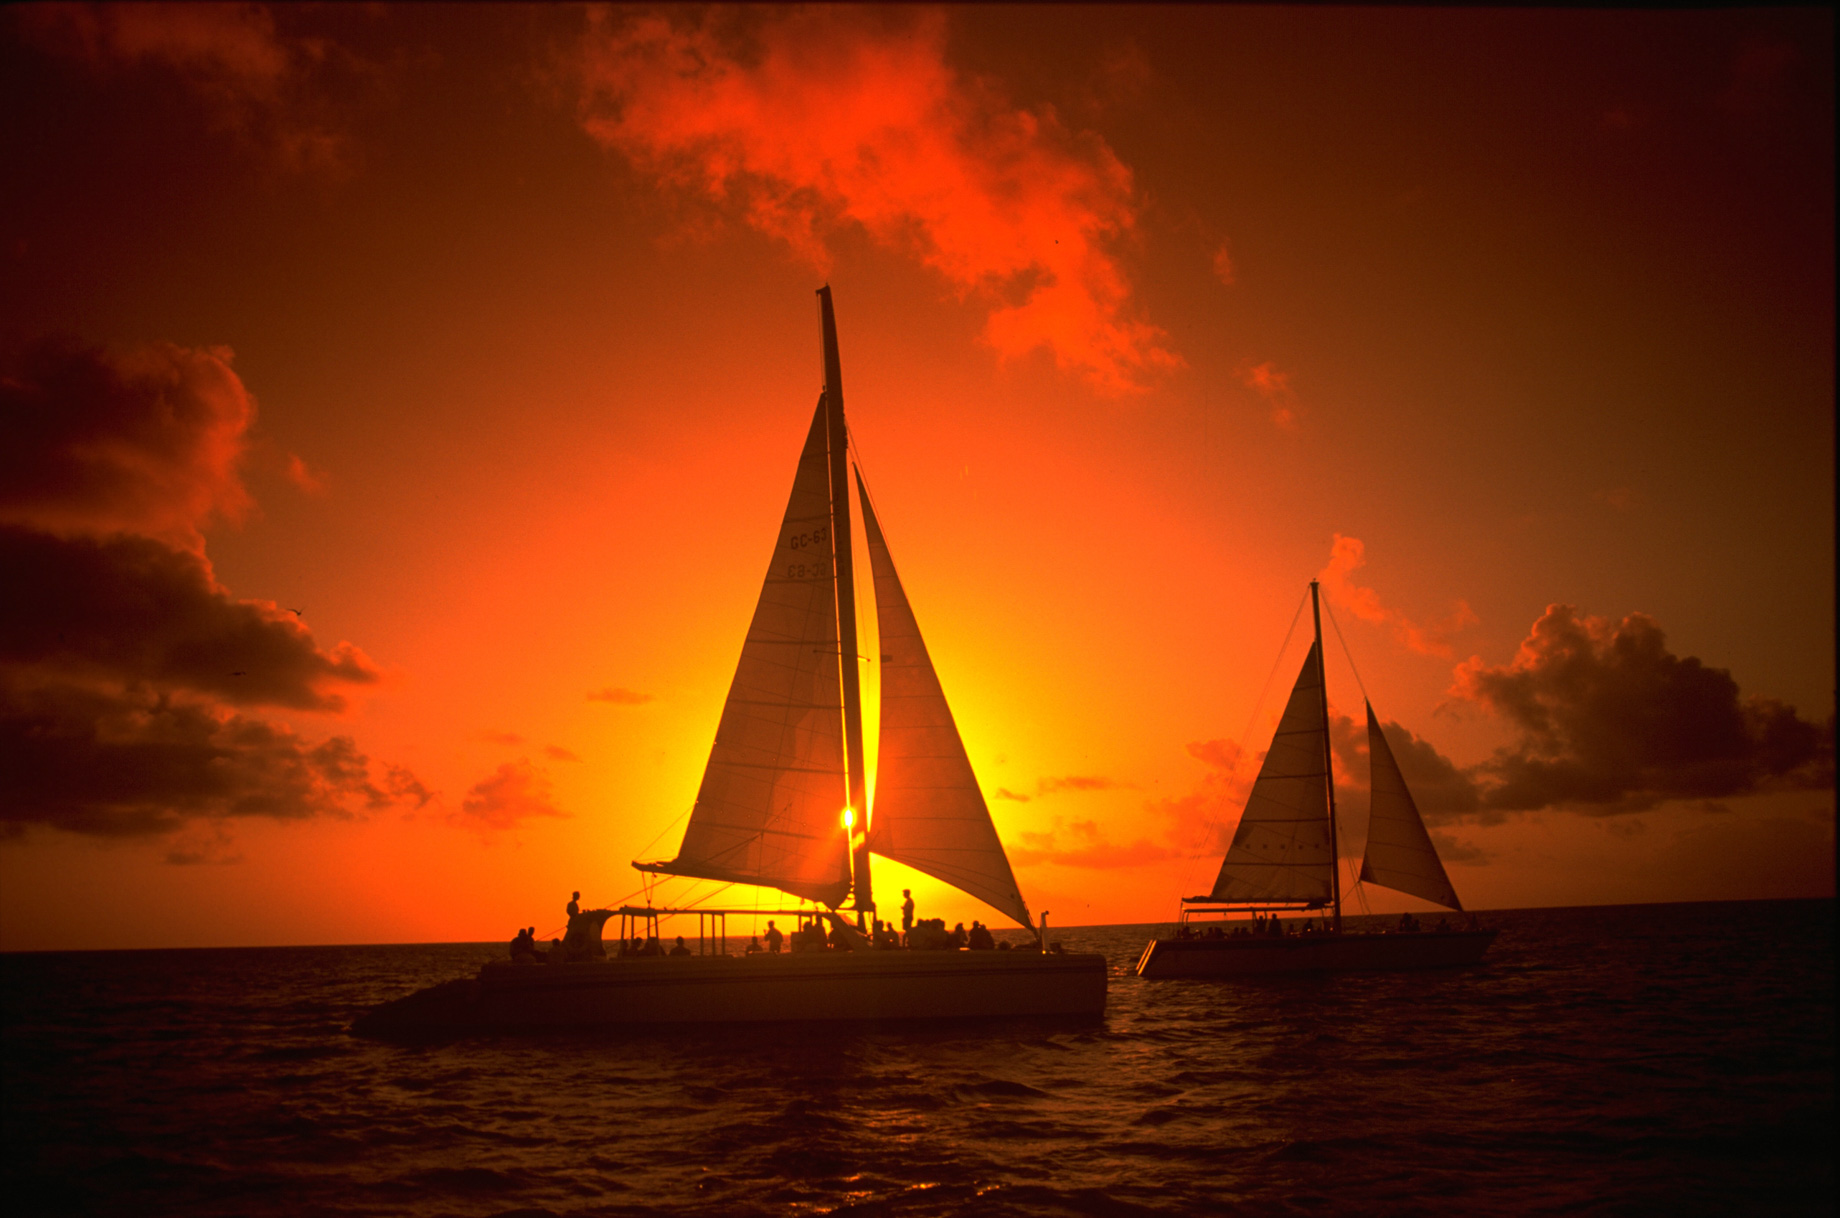 Hyatt Regency Aruba Resort & Casino – Noord, Aruba – Sunset Sailing